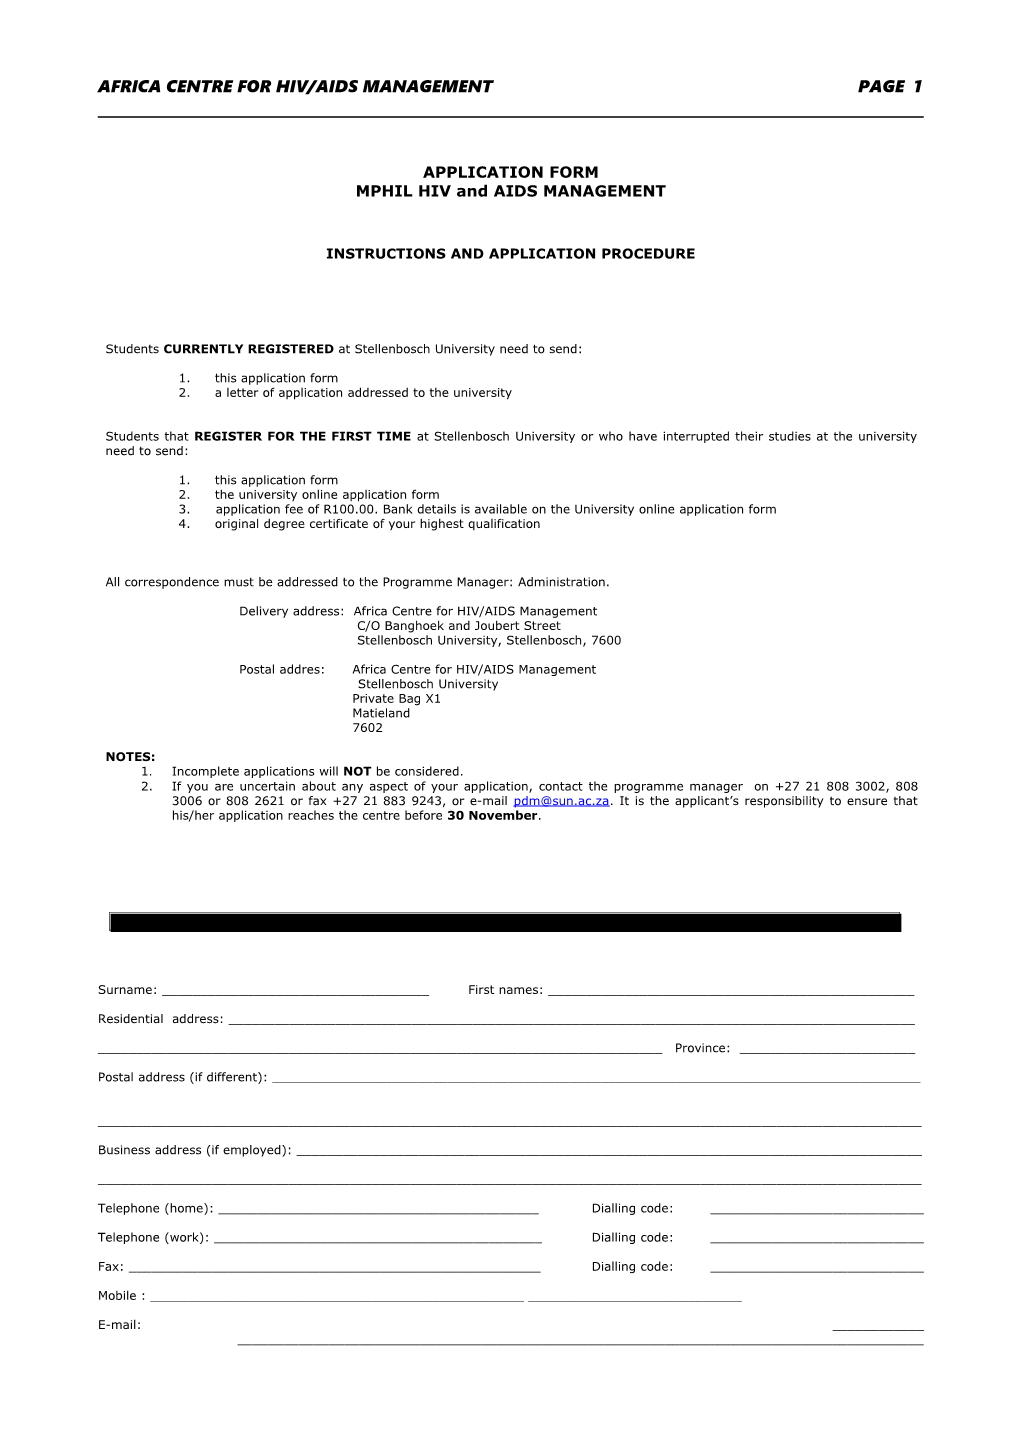 Application Form for Mphil Hiv/Aids Management